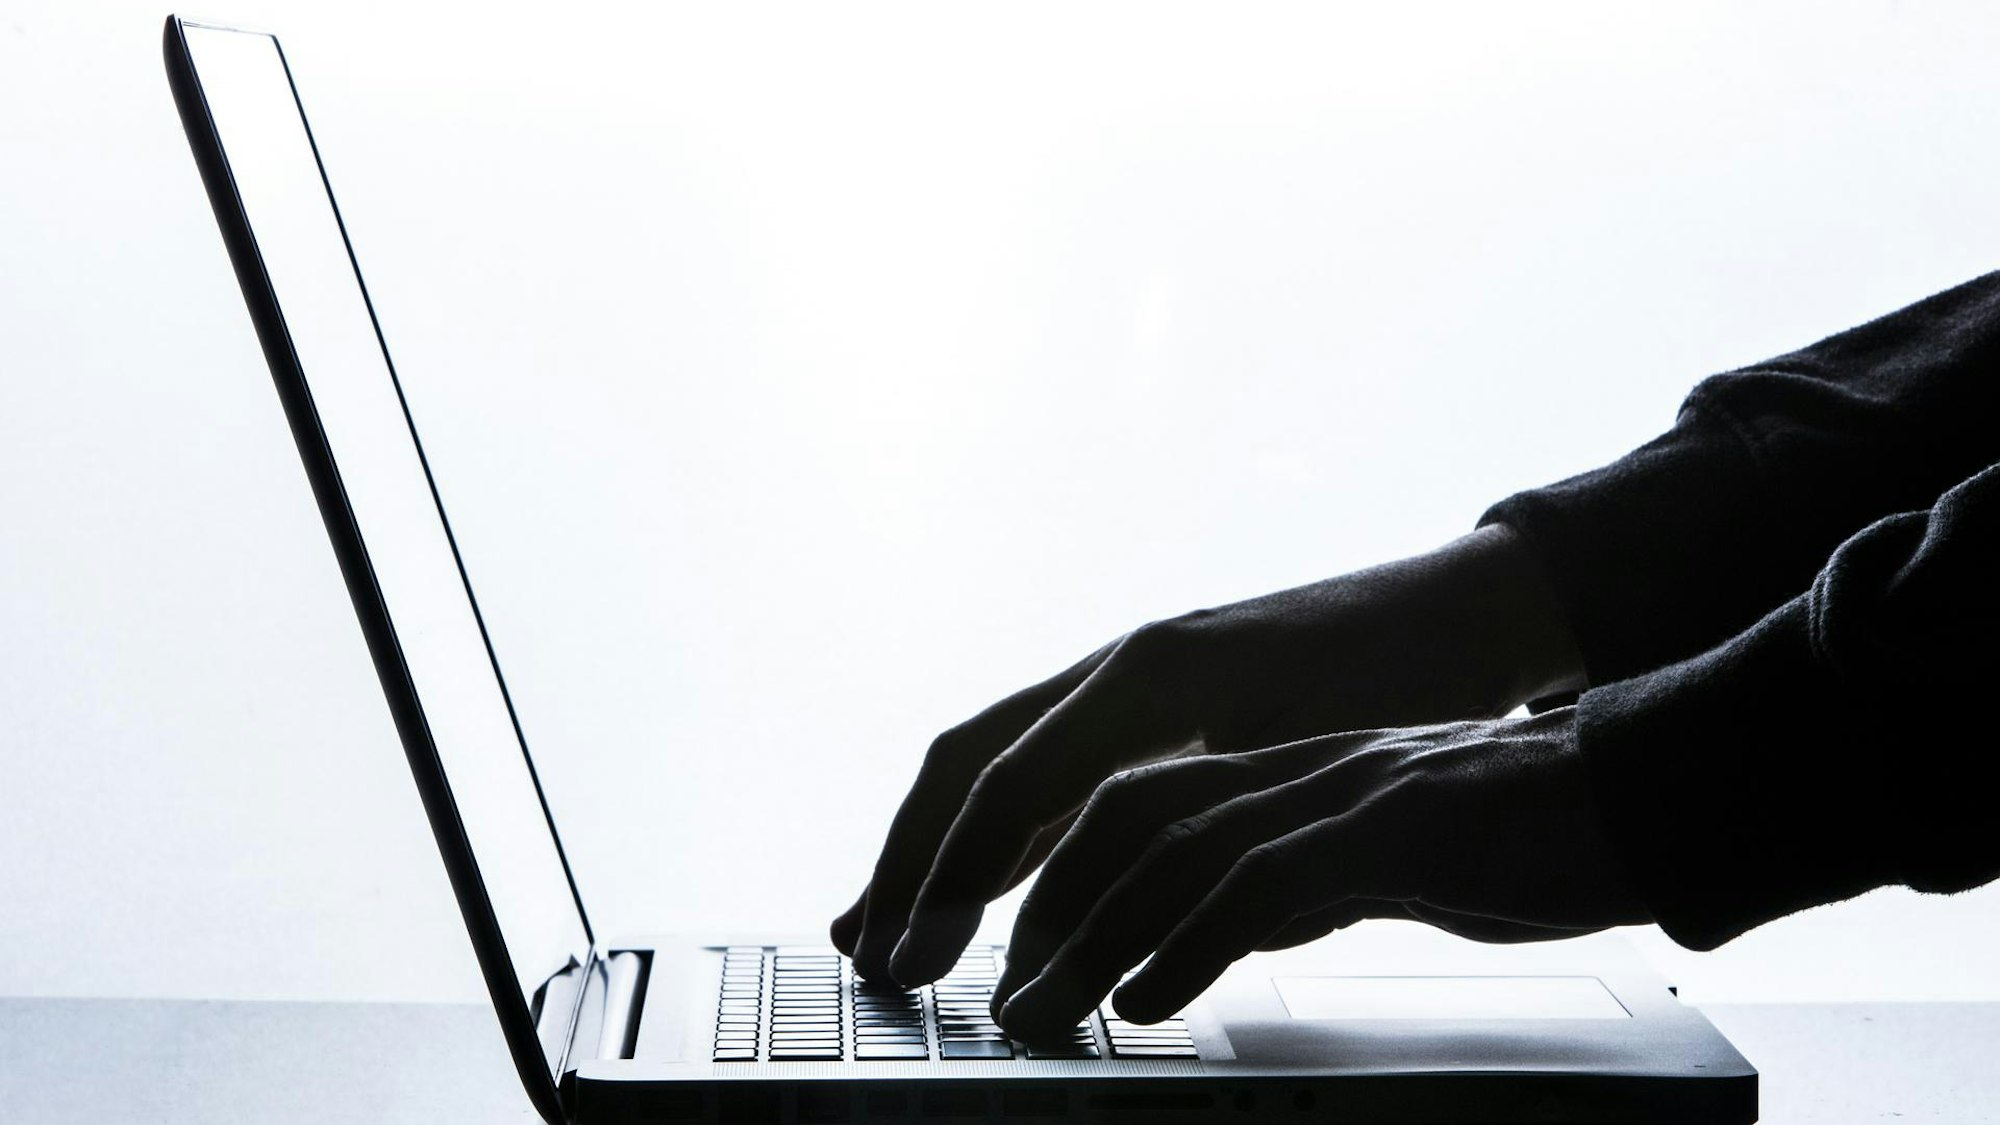 Hände in Handschuhen tippen auf der Tastatur eines Laptops.